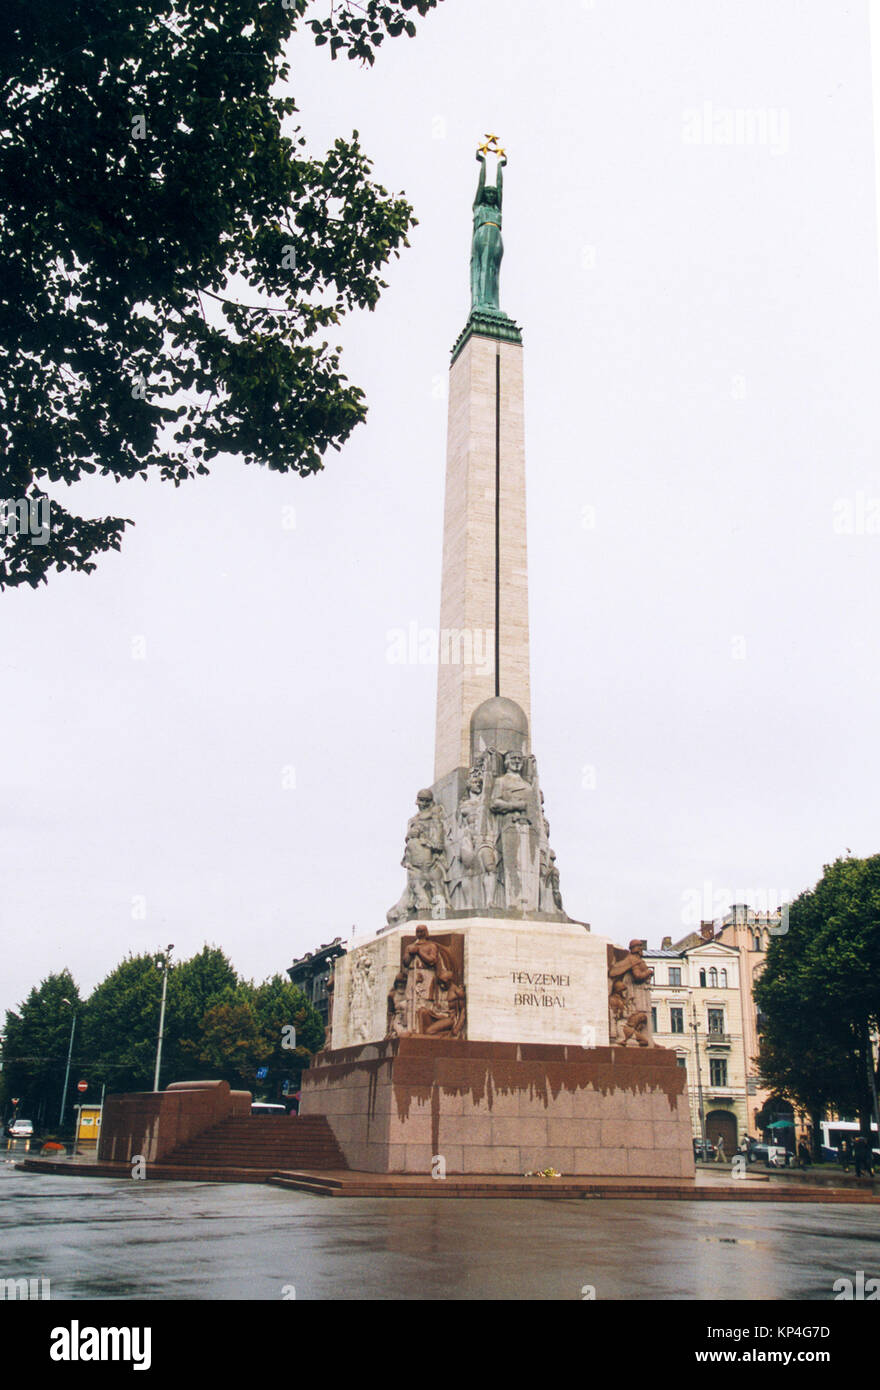 Freiheitsdenkmal in Riga Lettland Denkmal für ehren Soldaten während der lettischen Unabhängigkeit 1918 getötet Stockfoto